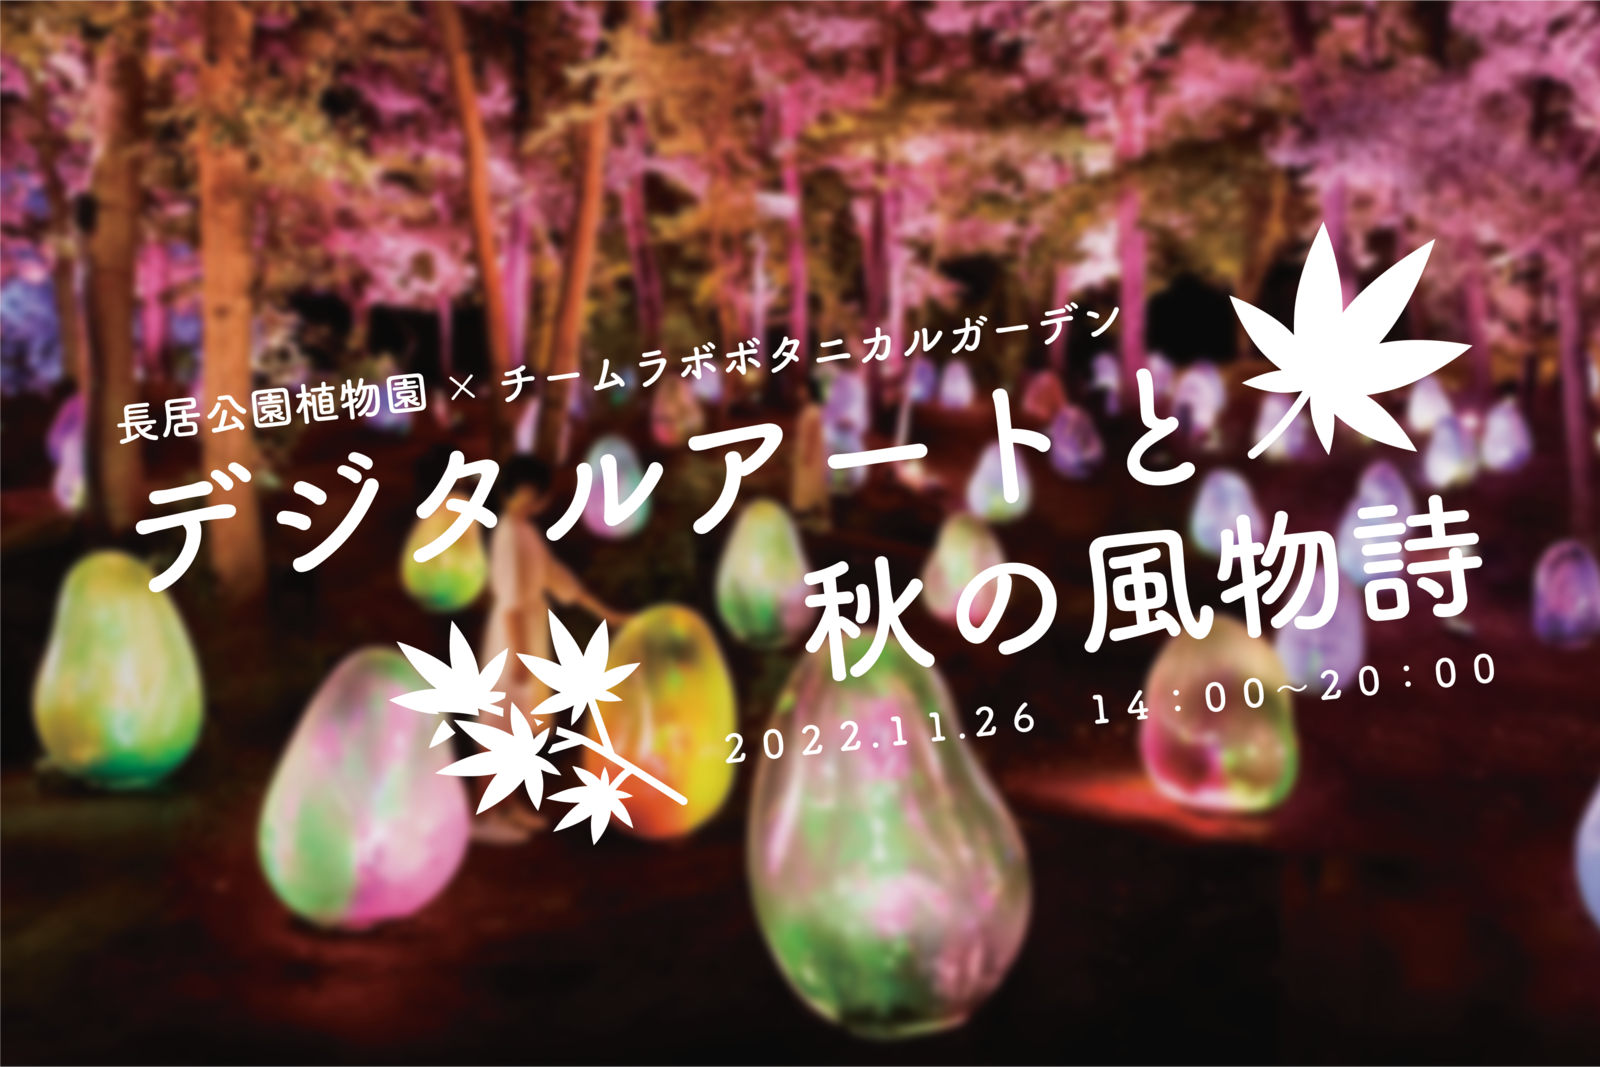 【大阪/長居公園】デジタルアートと秋の風物詩【男女2人で企画】